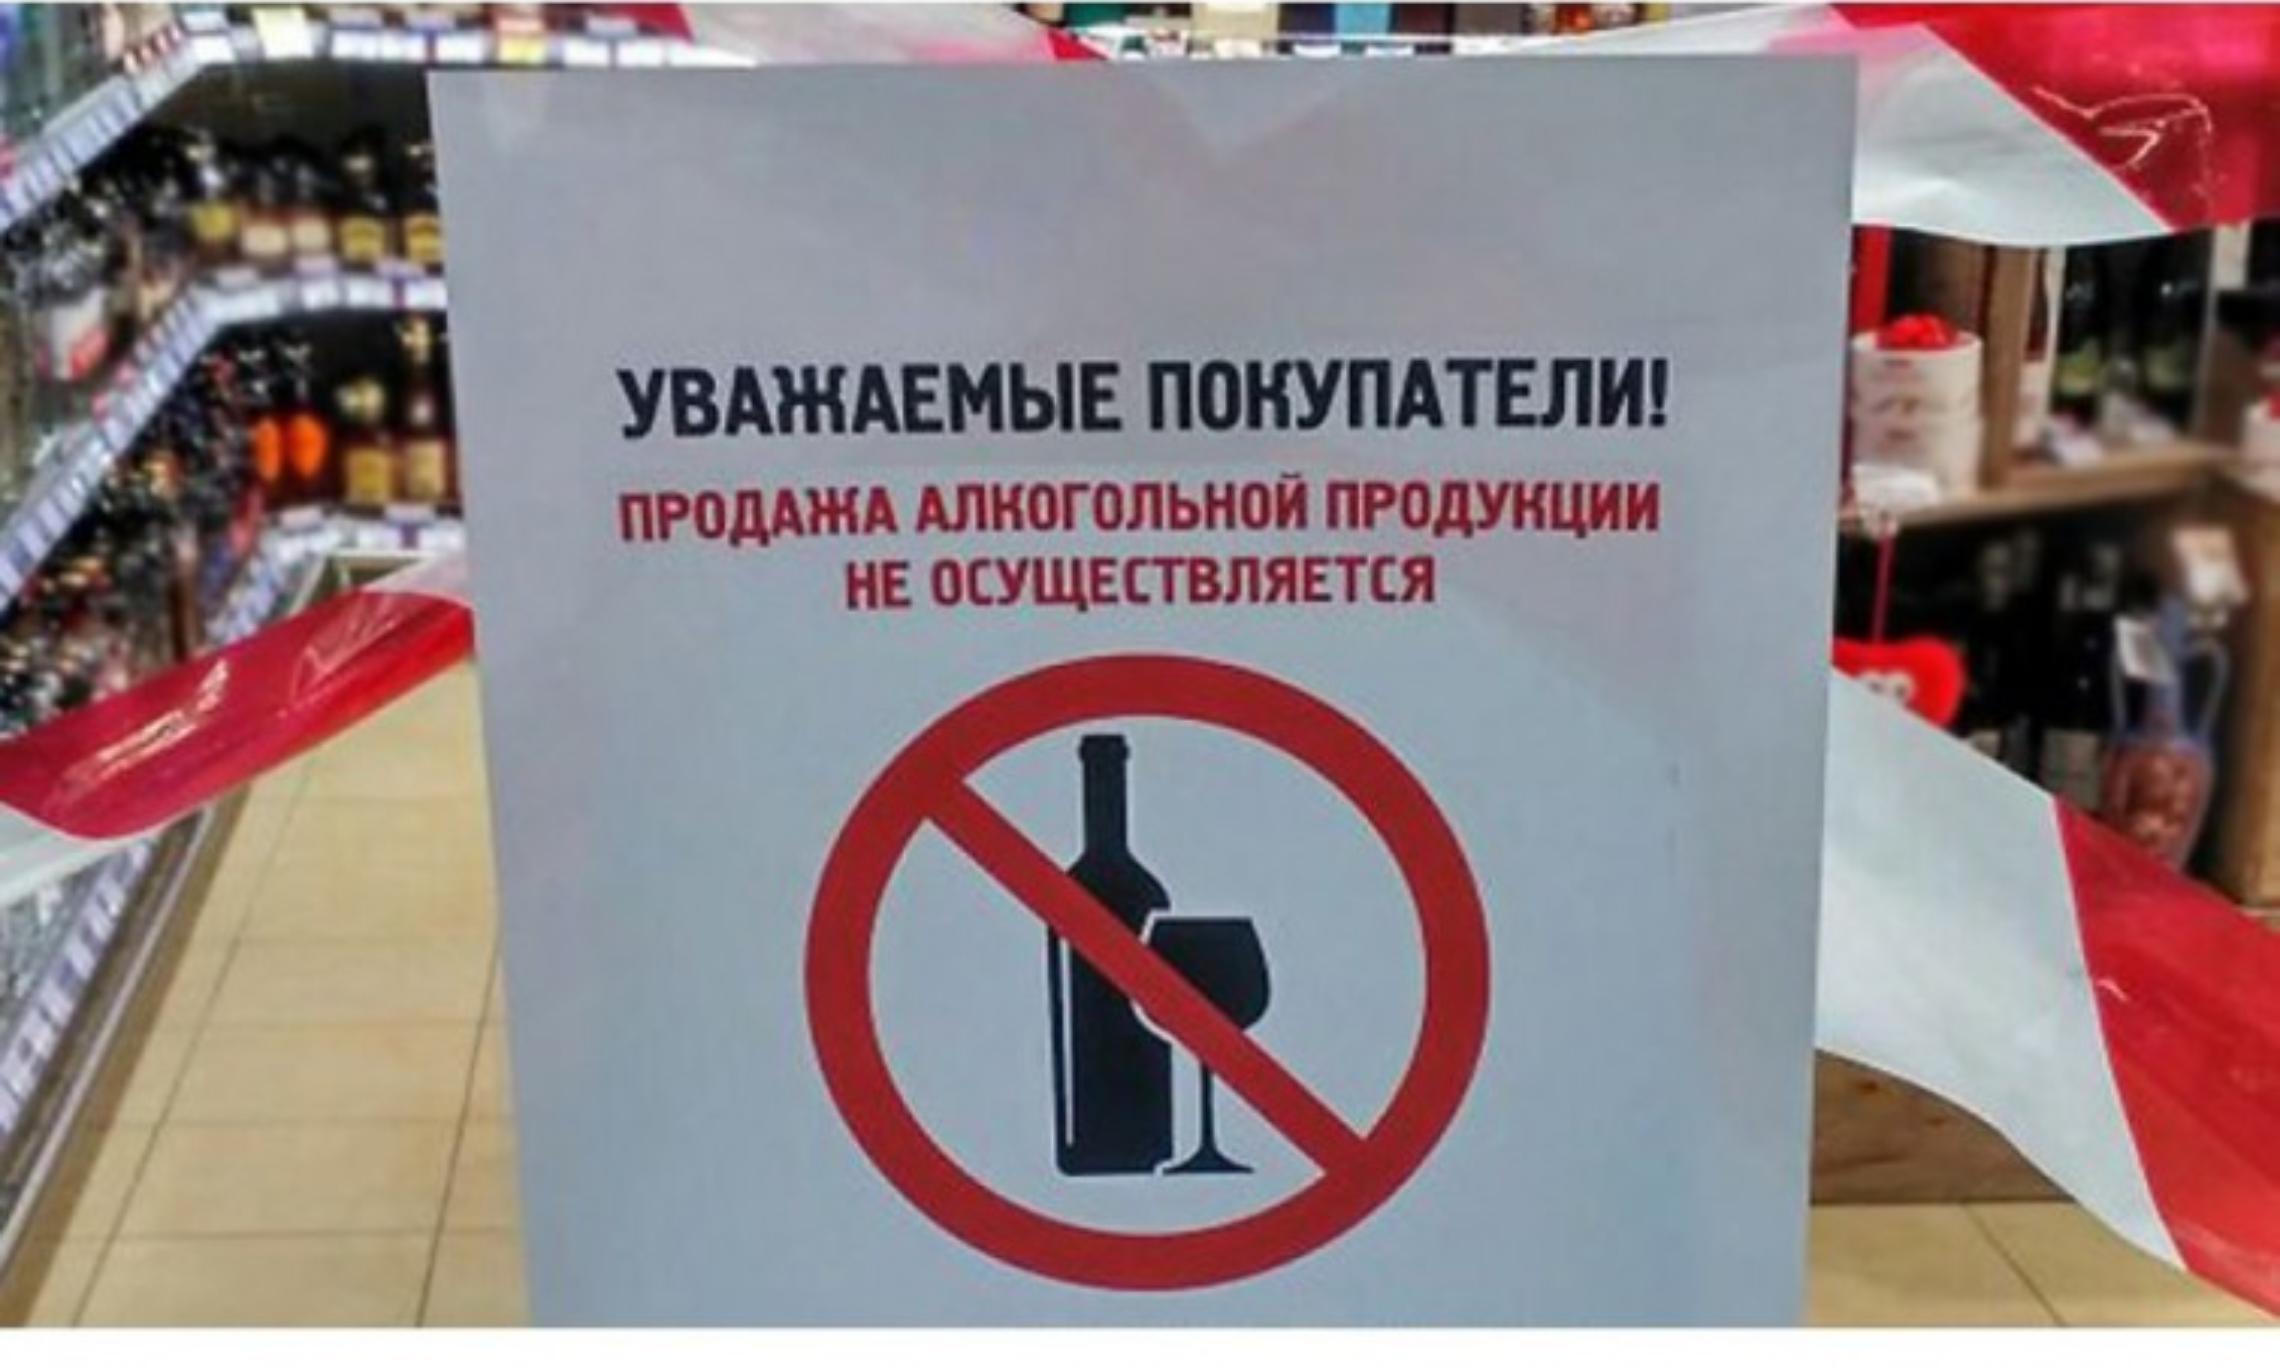 Запрет на куплю продажу. Алкоголь не продается. Запрет алкогольной продукции. Продажа алкогольной продукции запрещена.